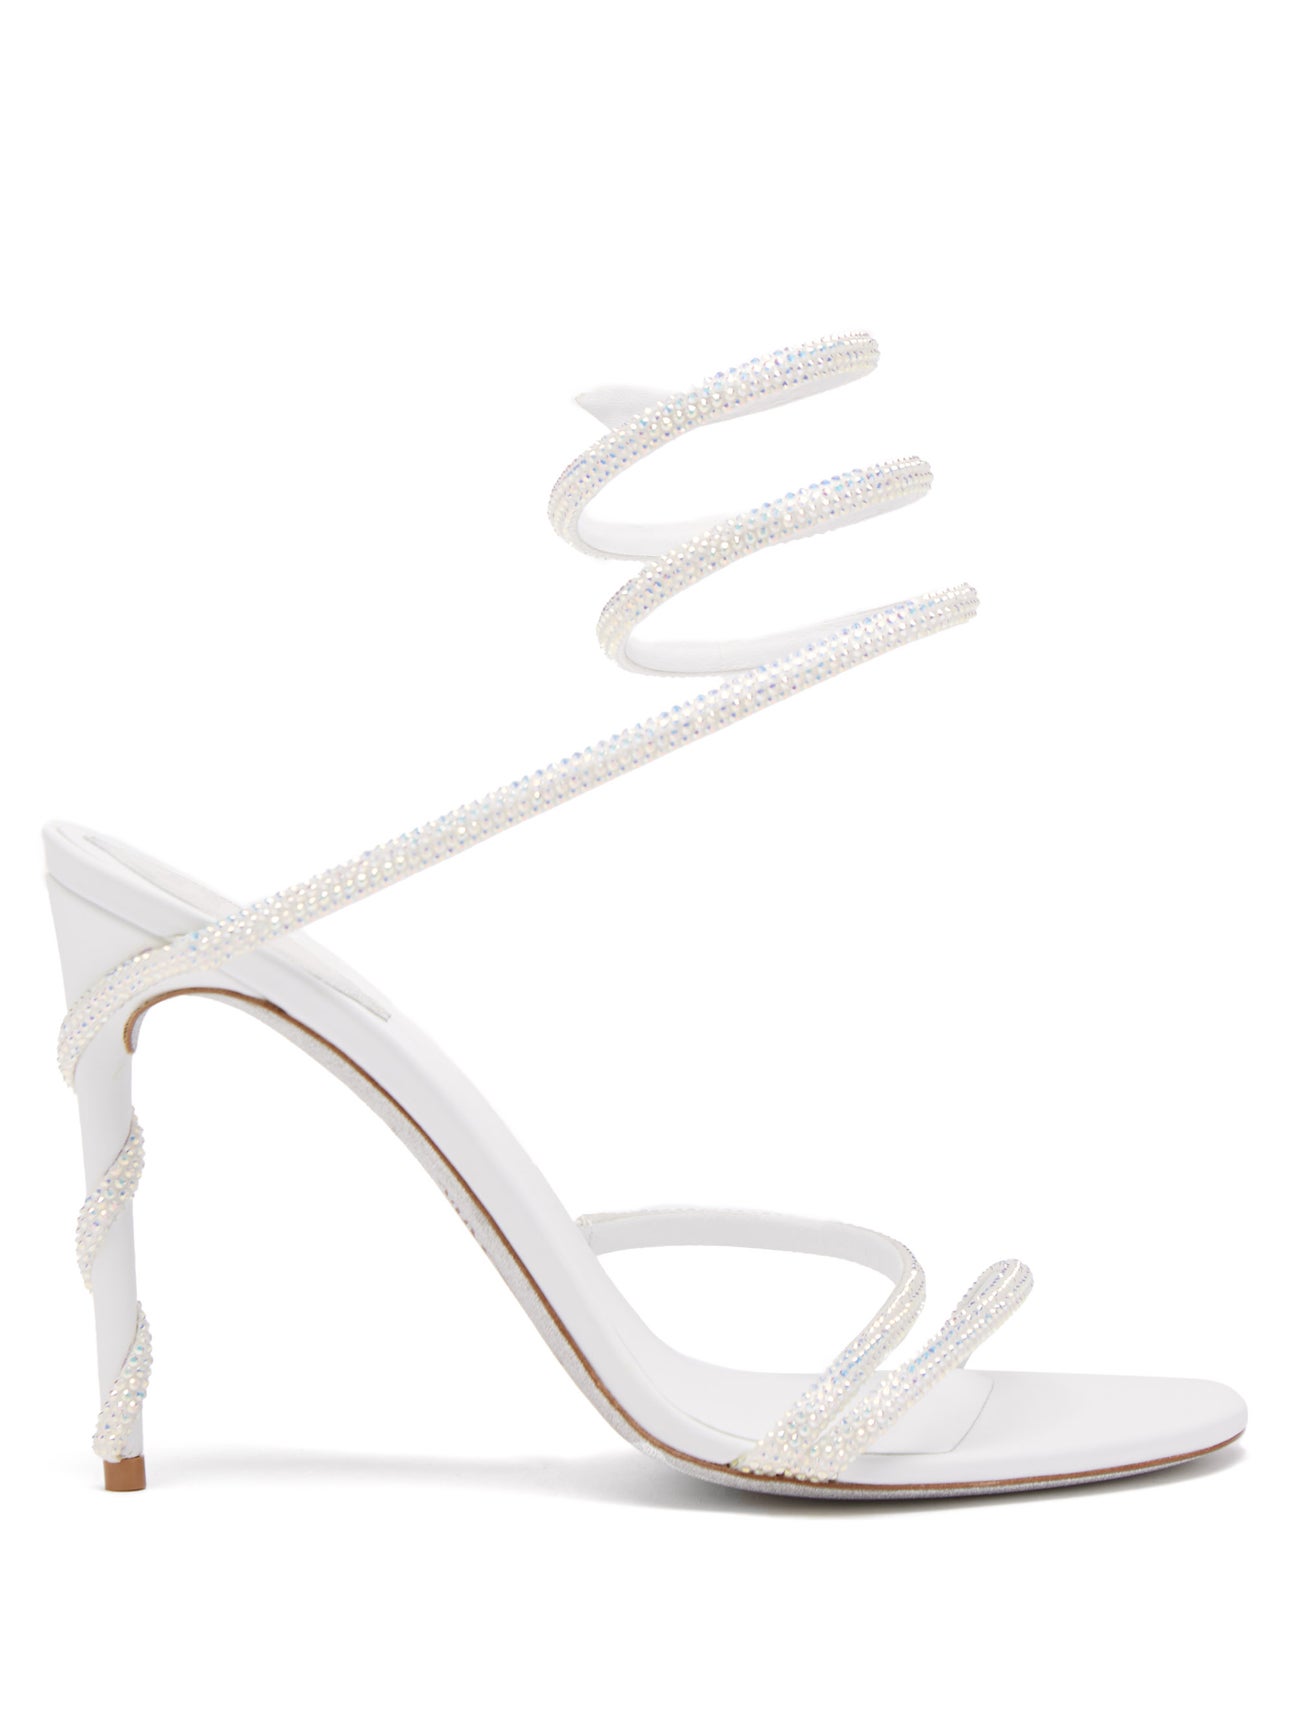 Мы нашли идеальную летнюю обувь: белые босоножки как у Рози Хантингтон-Уайтли